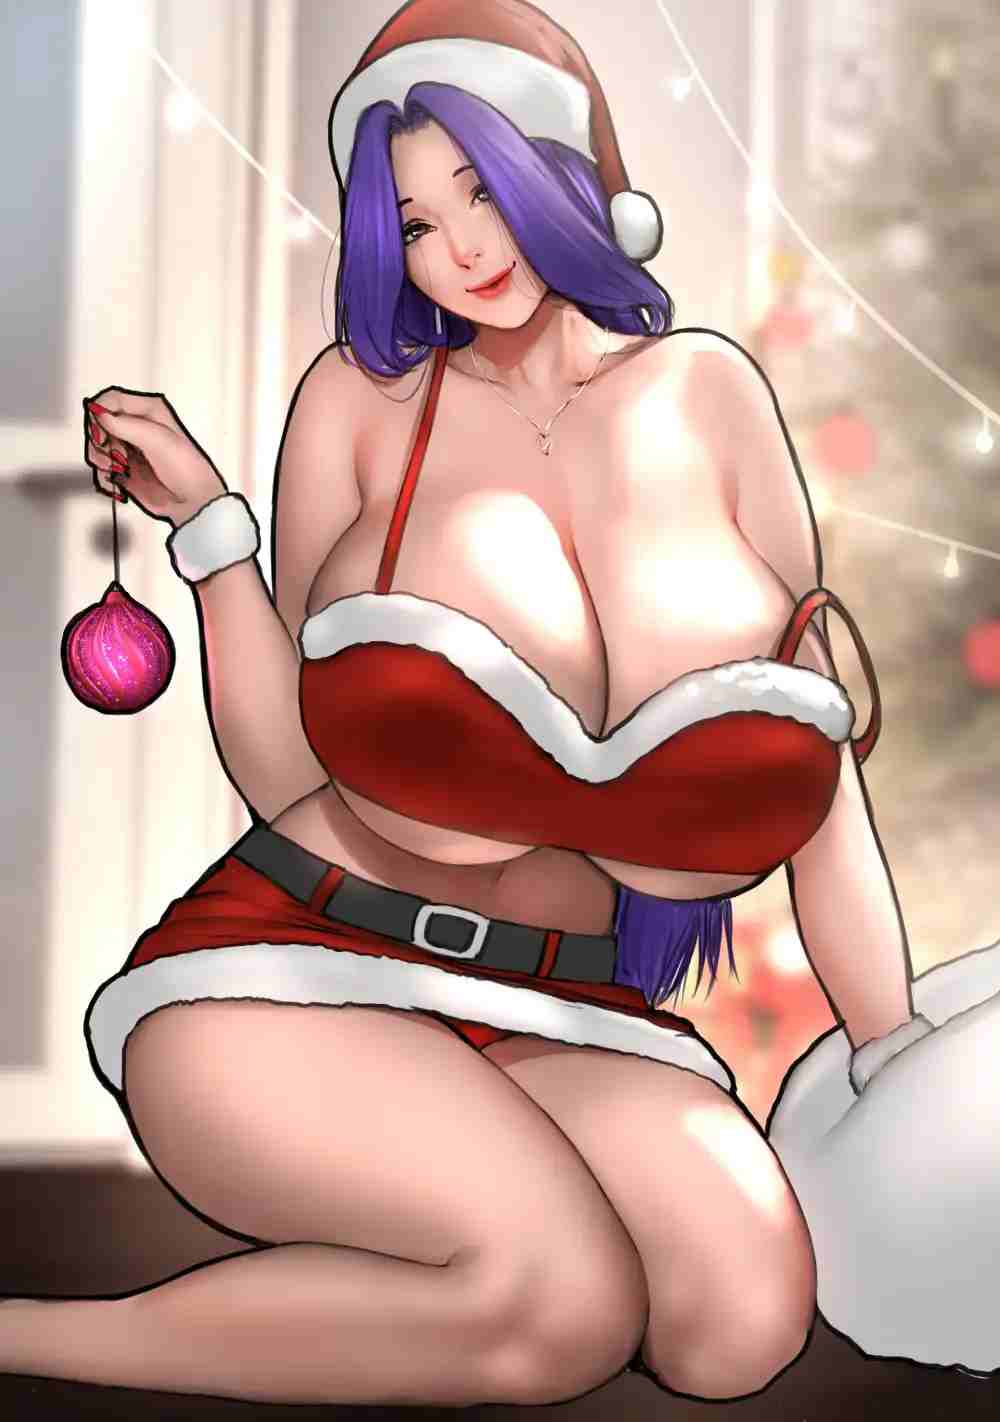 Christmas Special